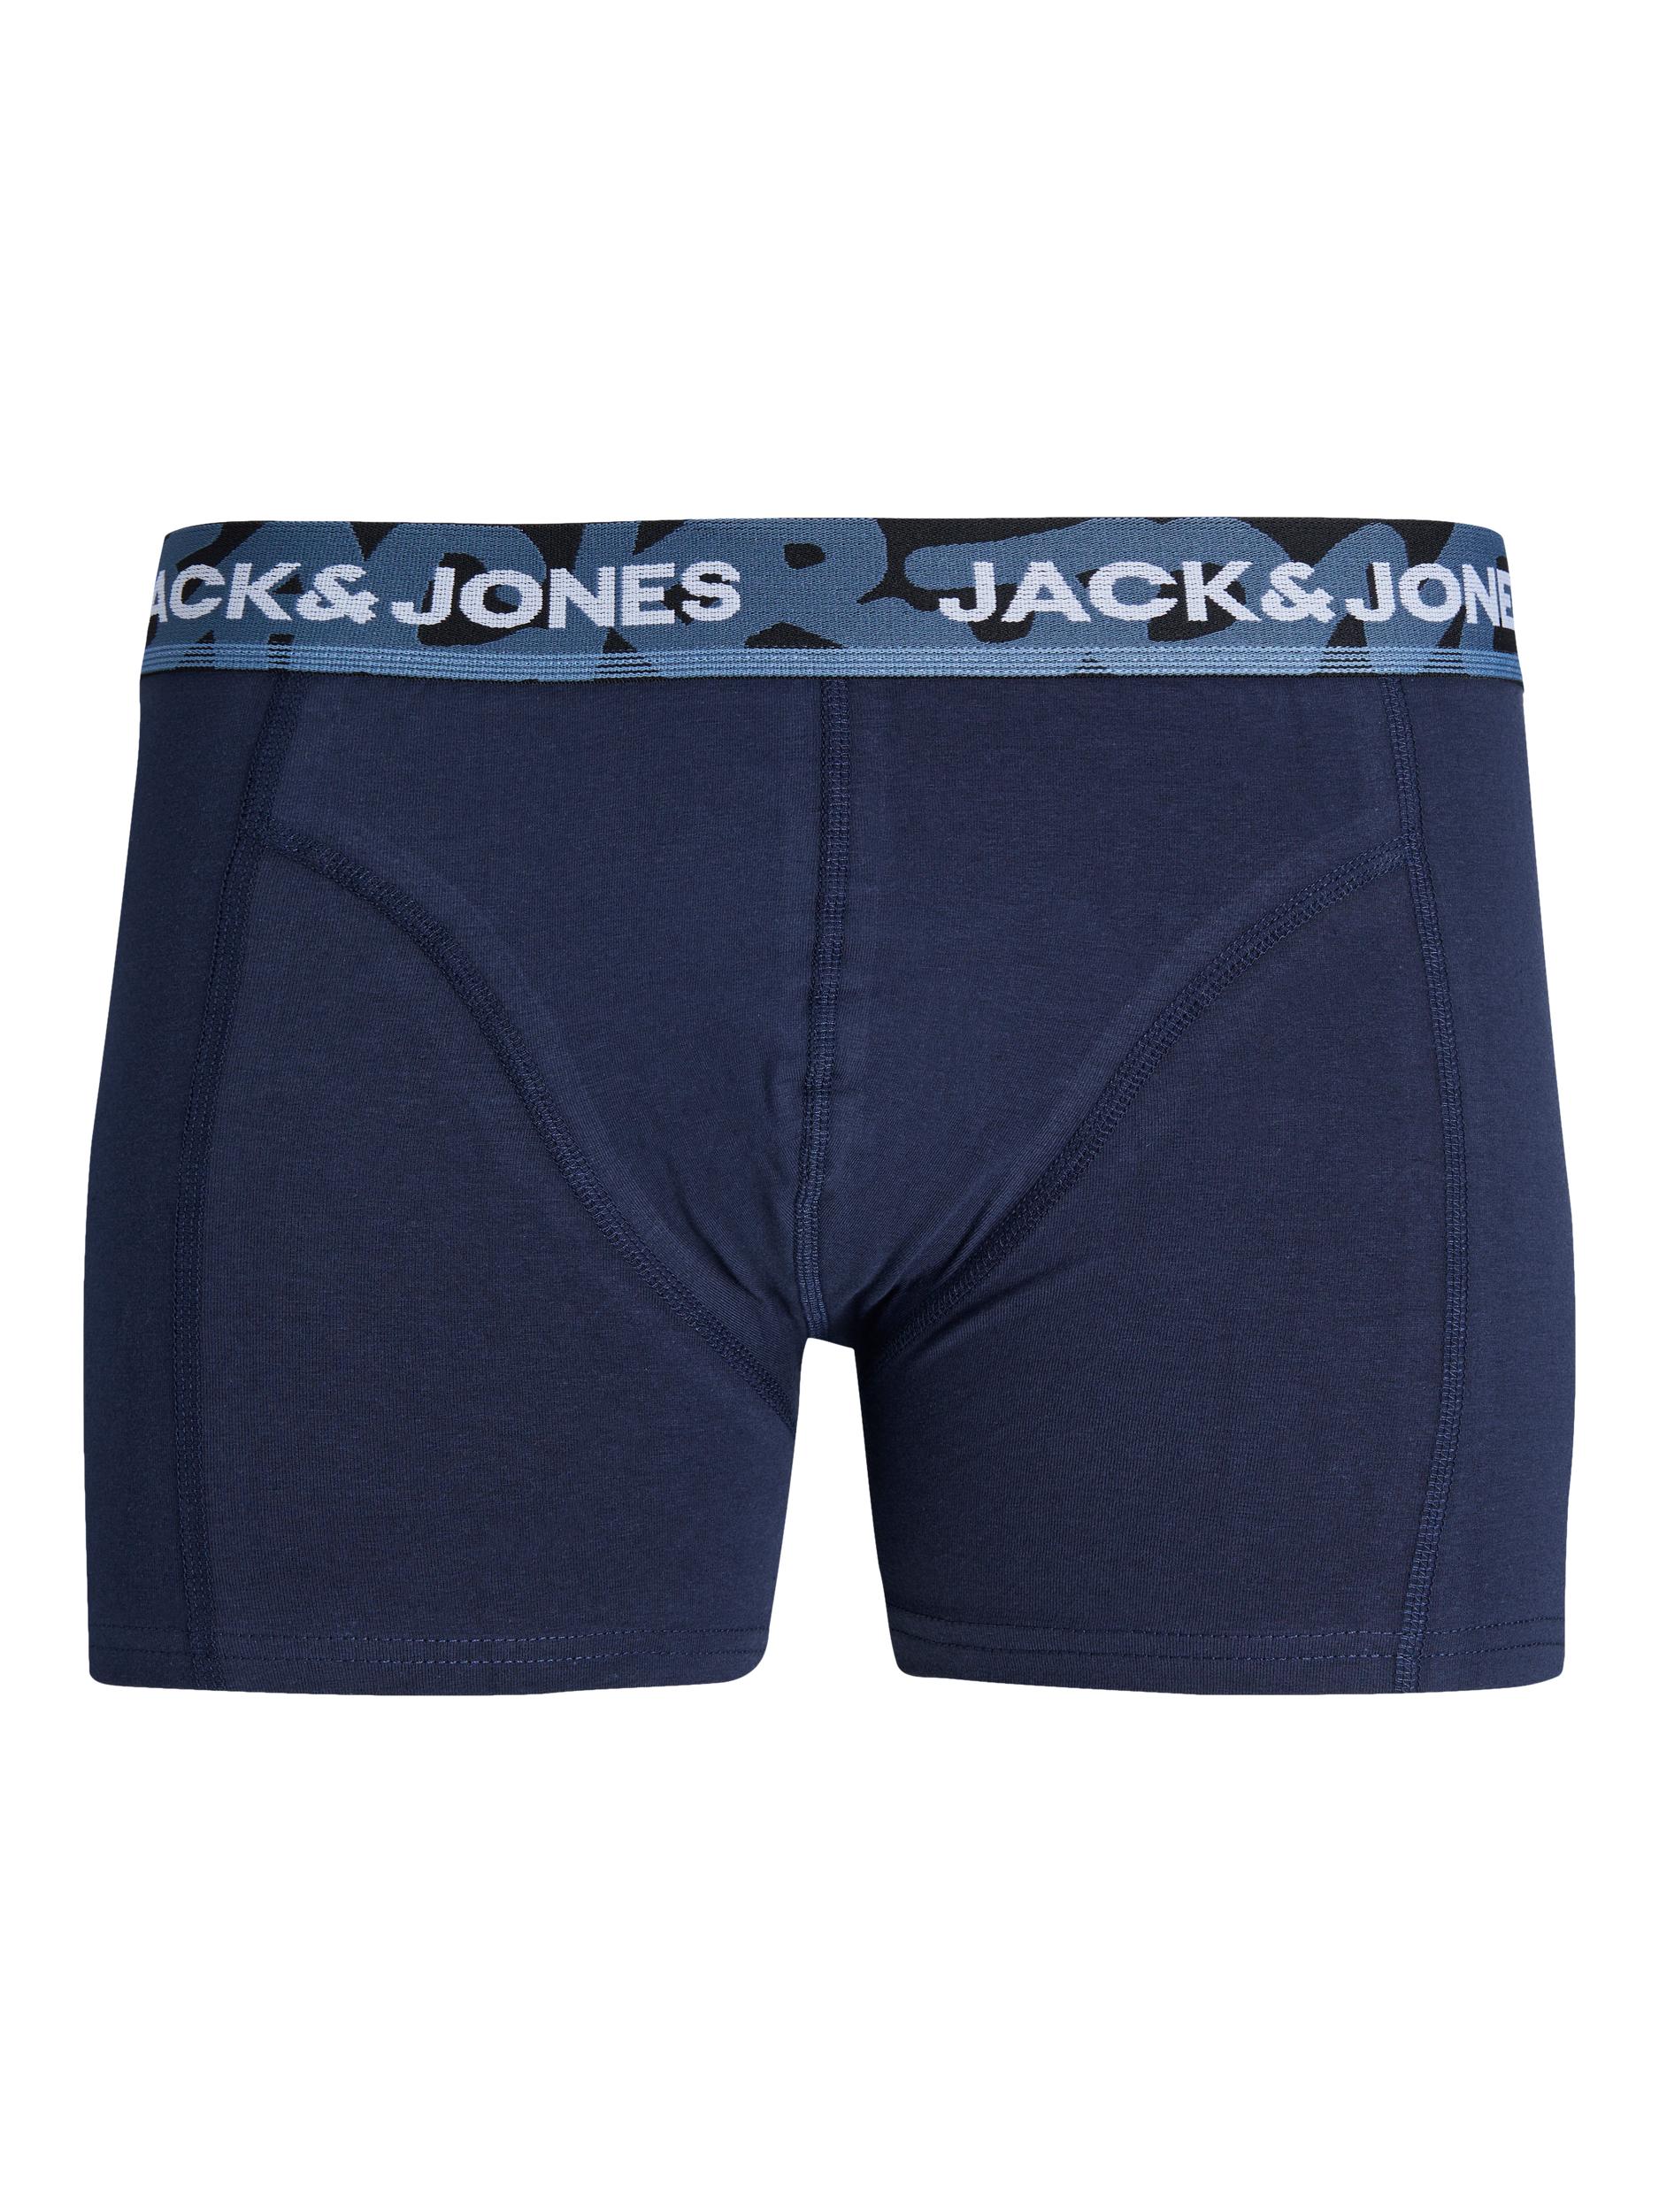 JACK&JONES - JACBASIC TRUNKS 3 PACK JNR - 12246621